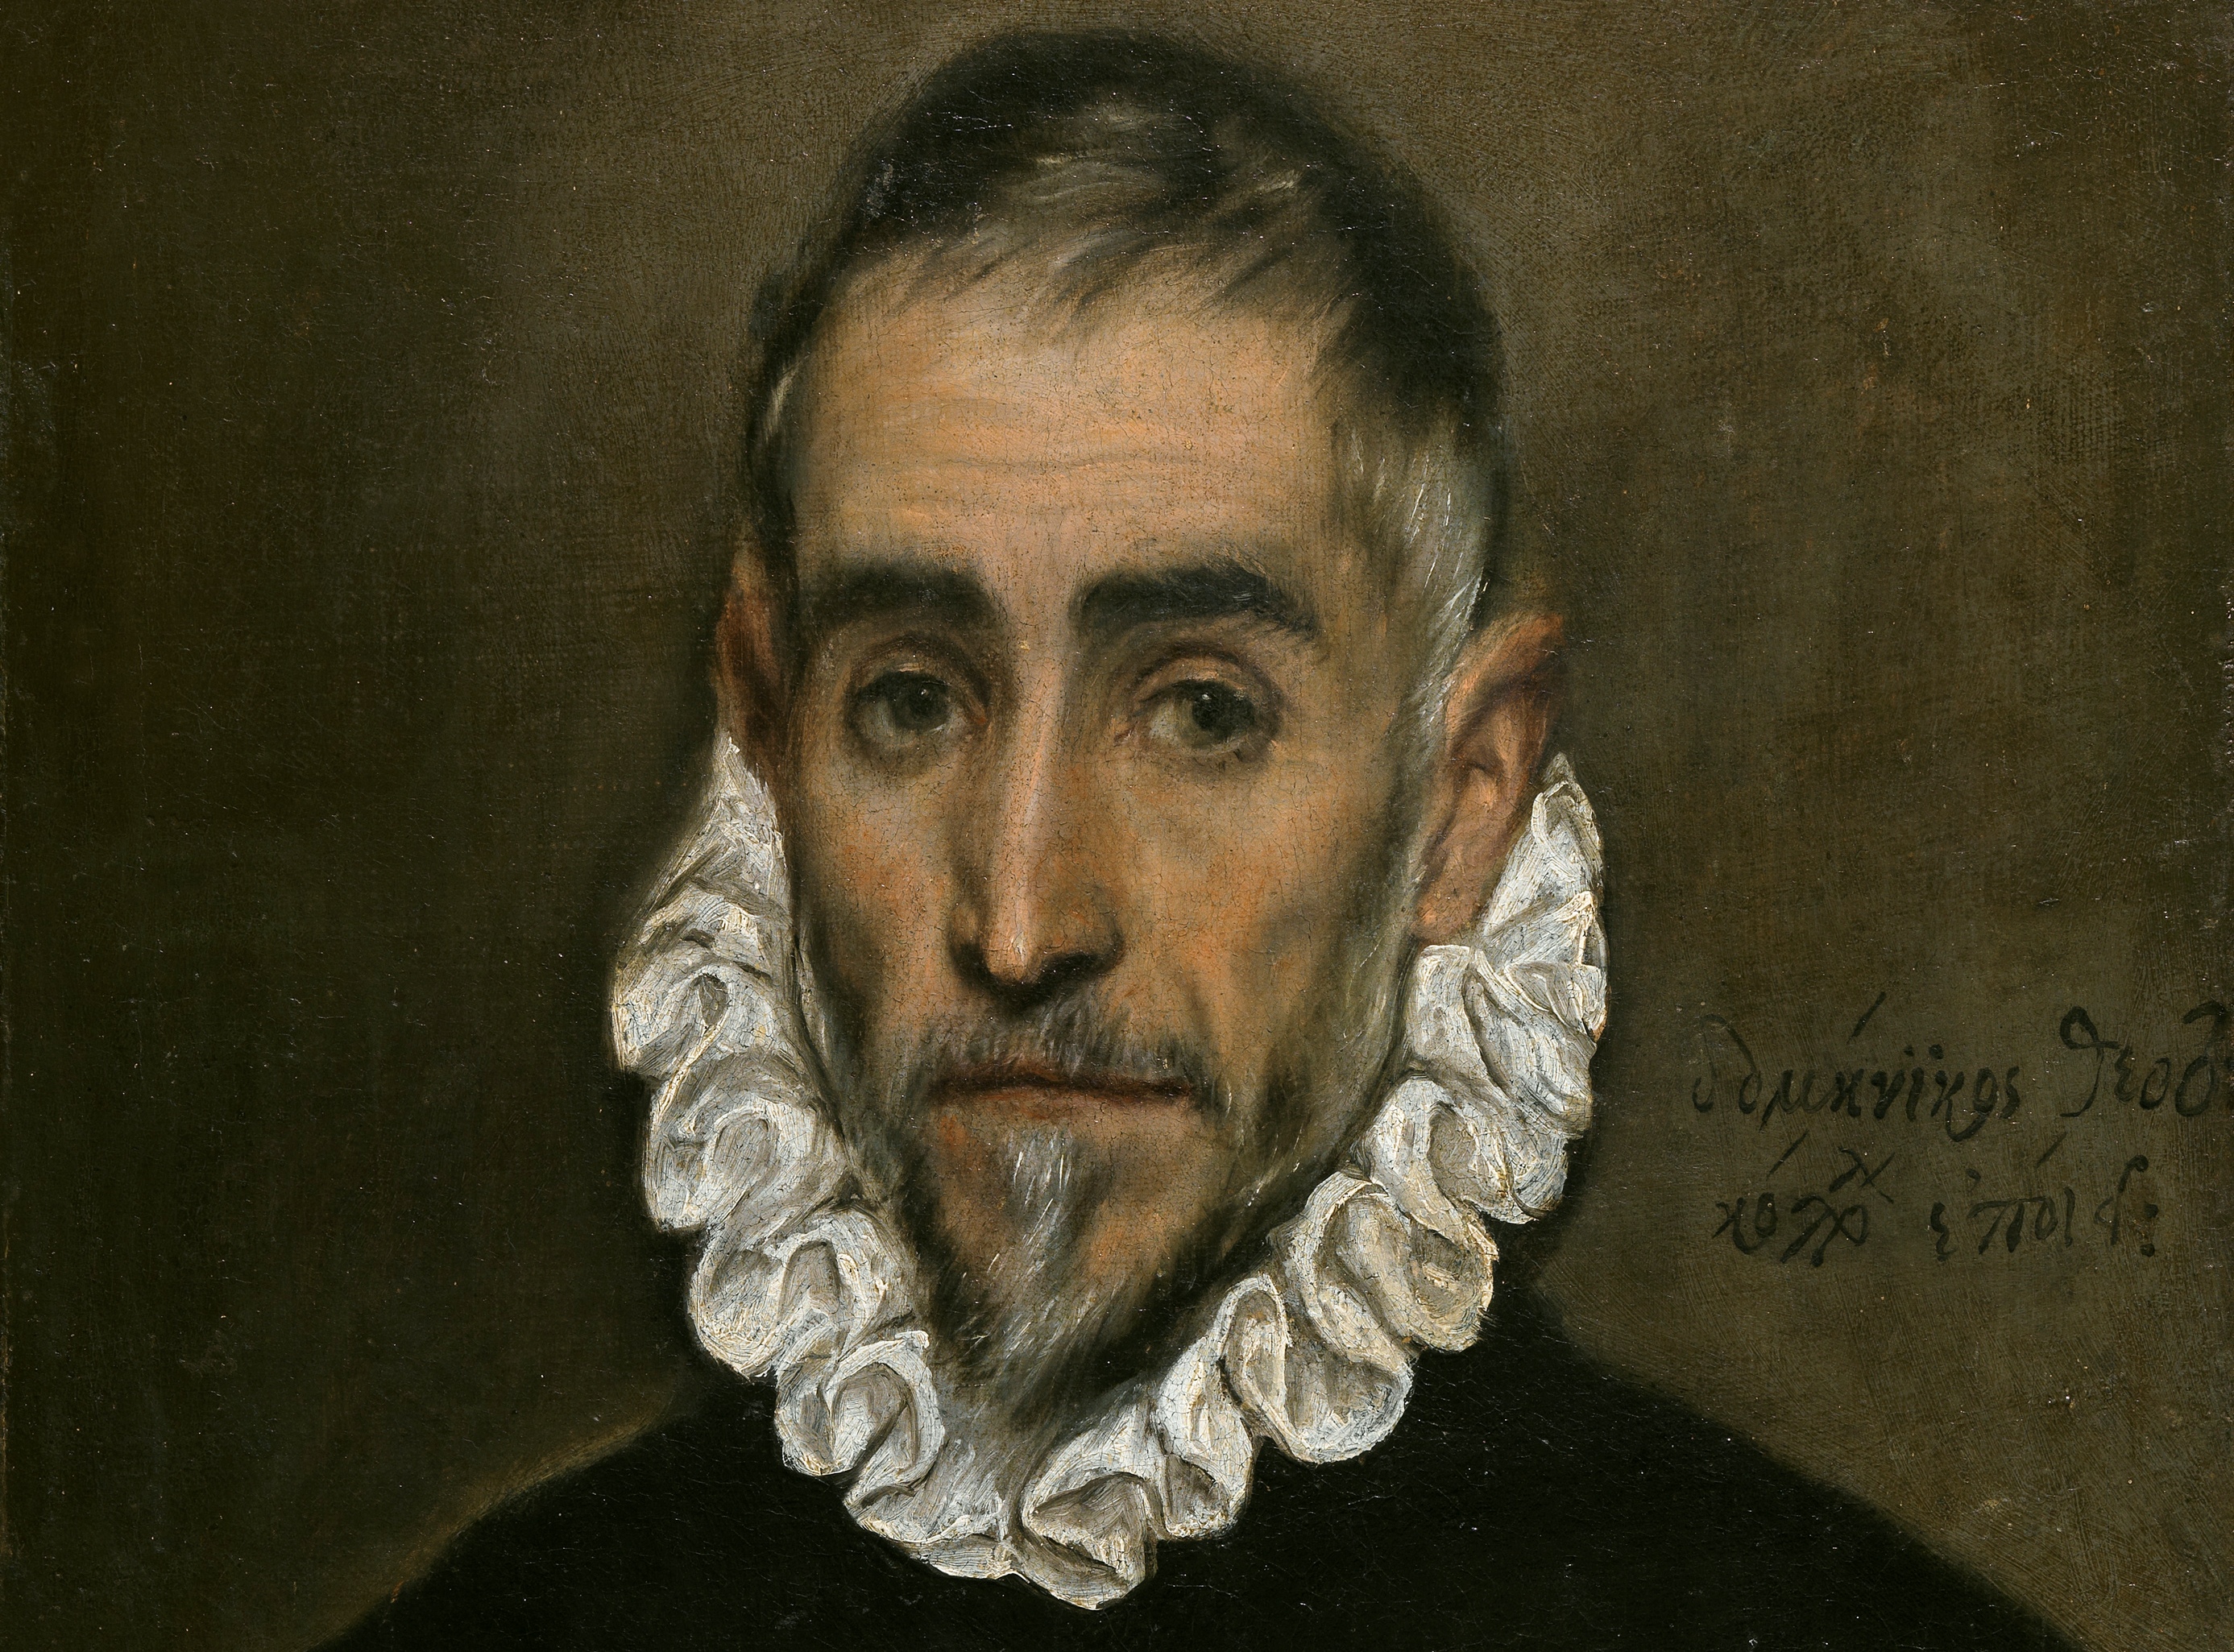 Προβολή της νέας ταινίας του Λ. Χαρωνίτη “El Greco – Προσωπογραφίες”